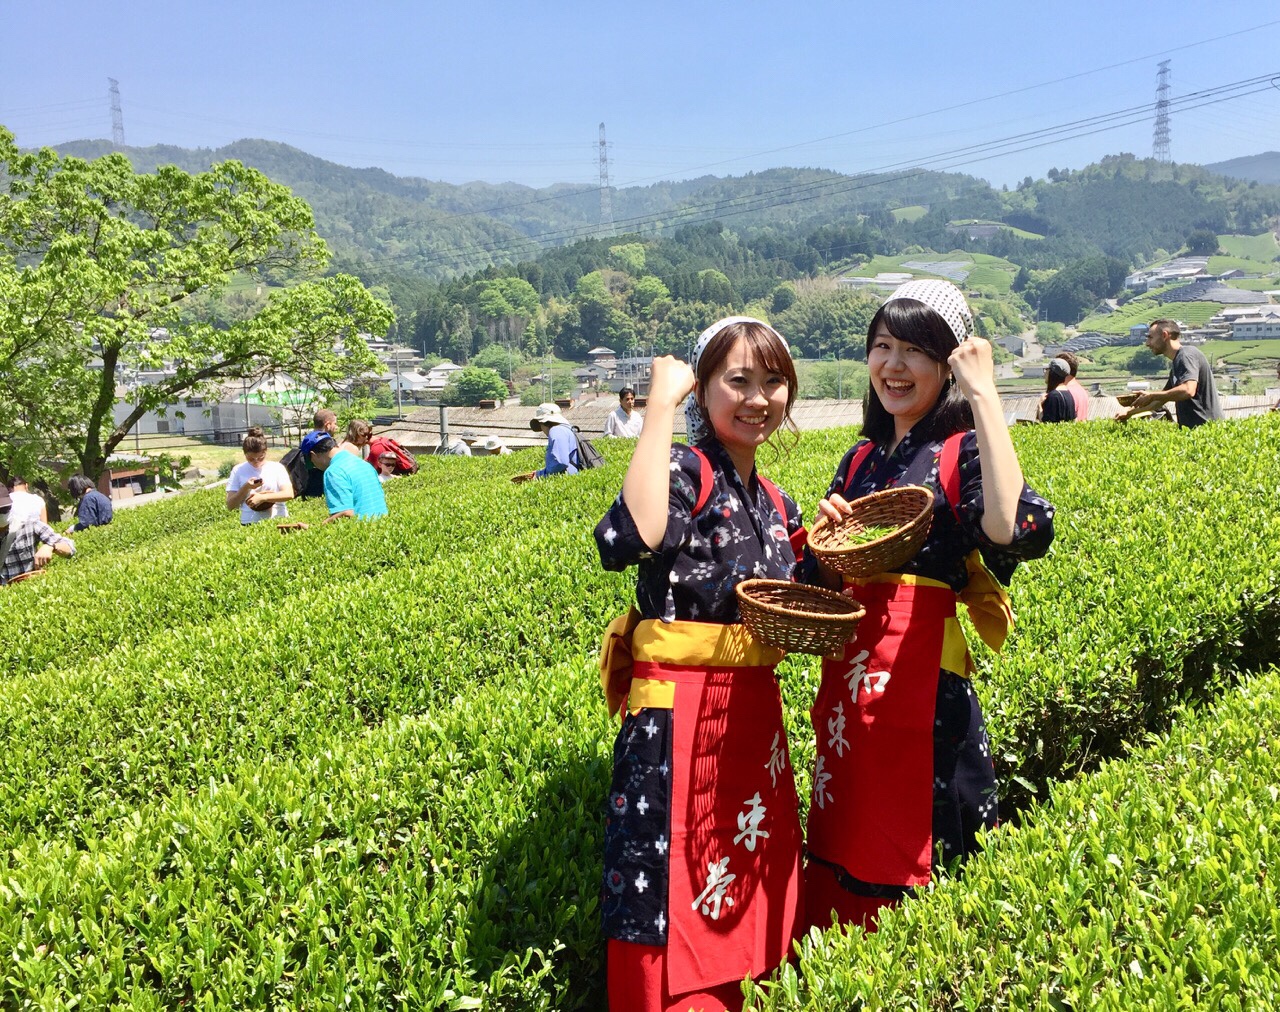 茶摘み 製茶体験できます 京都 宇治茶 和束町 お茶の通販 京都おぶぶ茶苑ブログ おぶログ